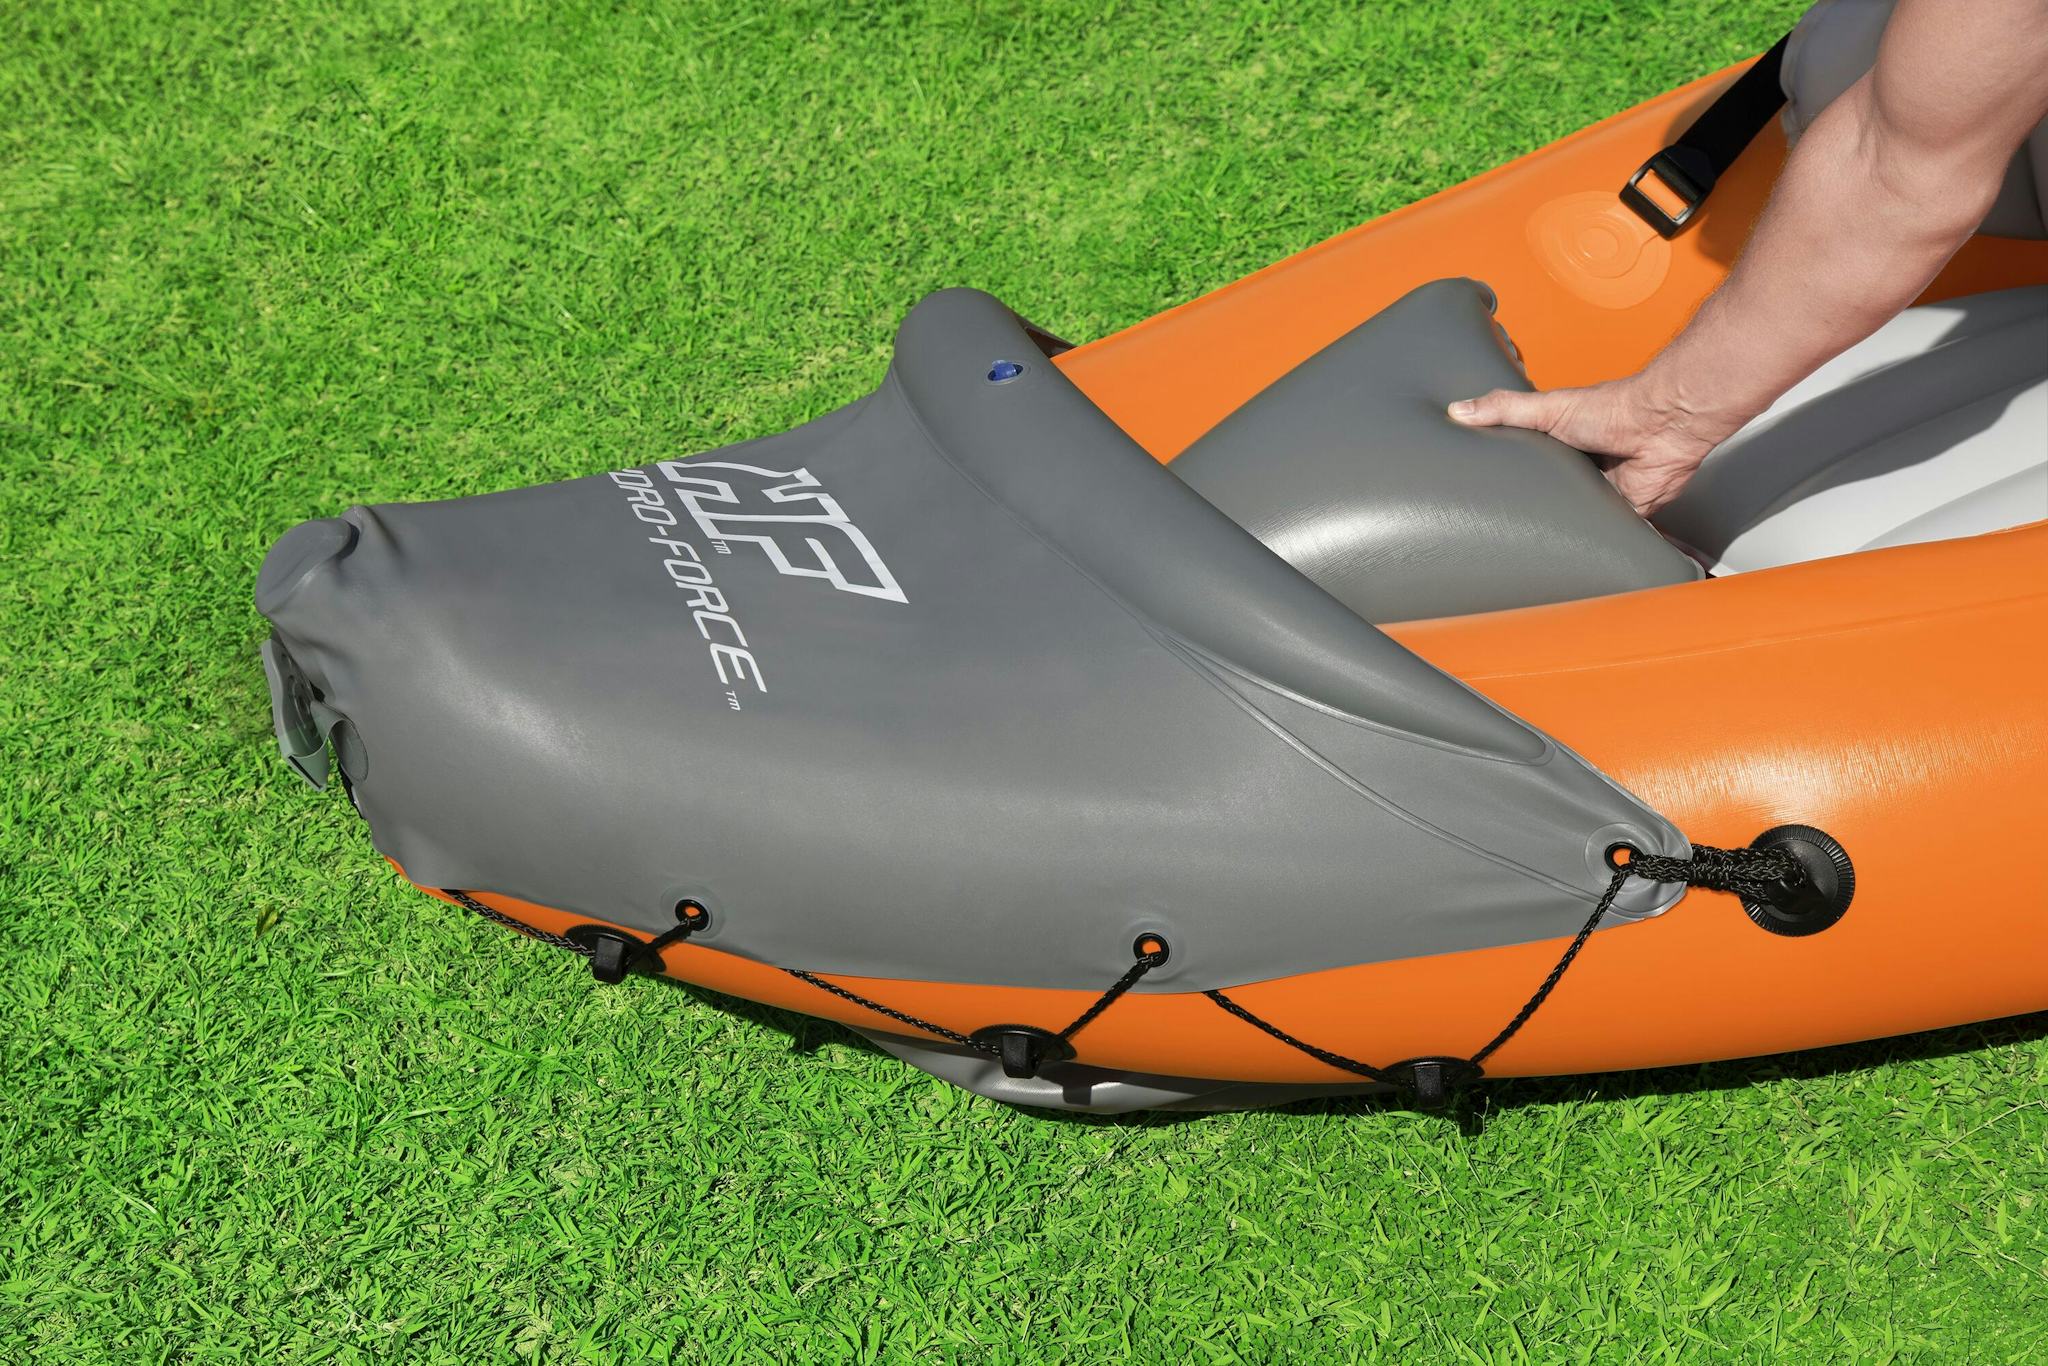 Sports d'eau Kayak gonflable Rapide X3 Hydro-Force™ 381 x 100cm, 3 places, 250 kg max, 2 pagaies, 2 ailerons amovibles et une pompe Bestway 7